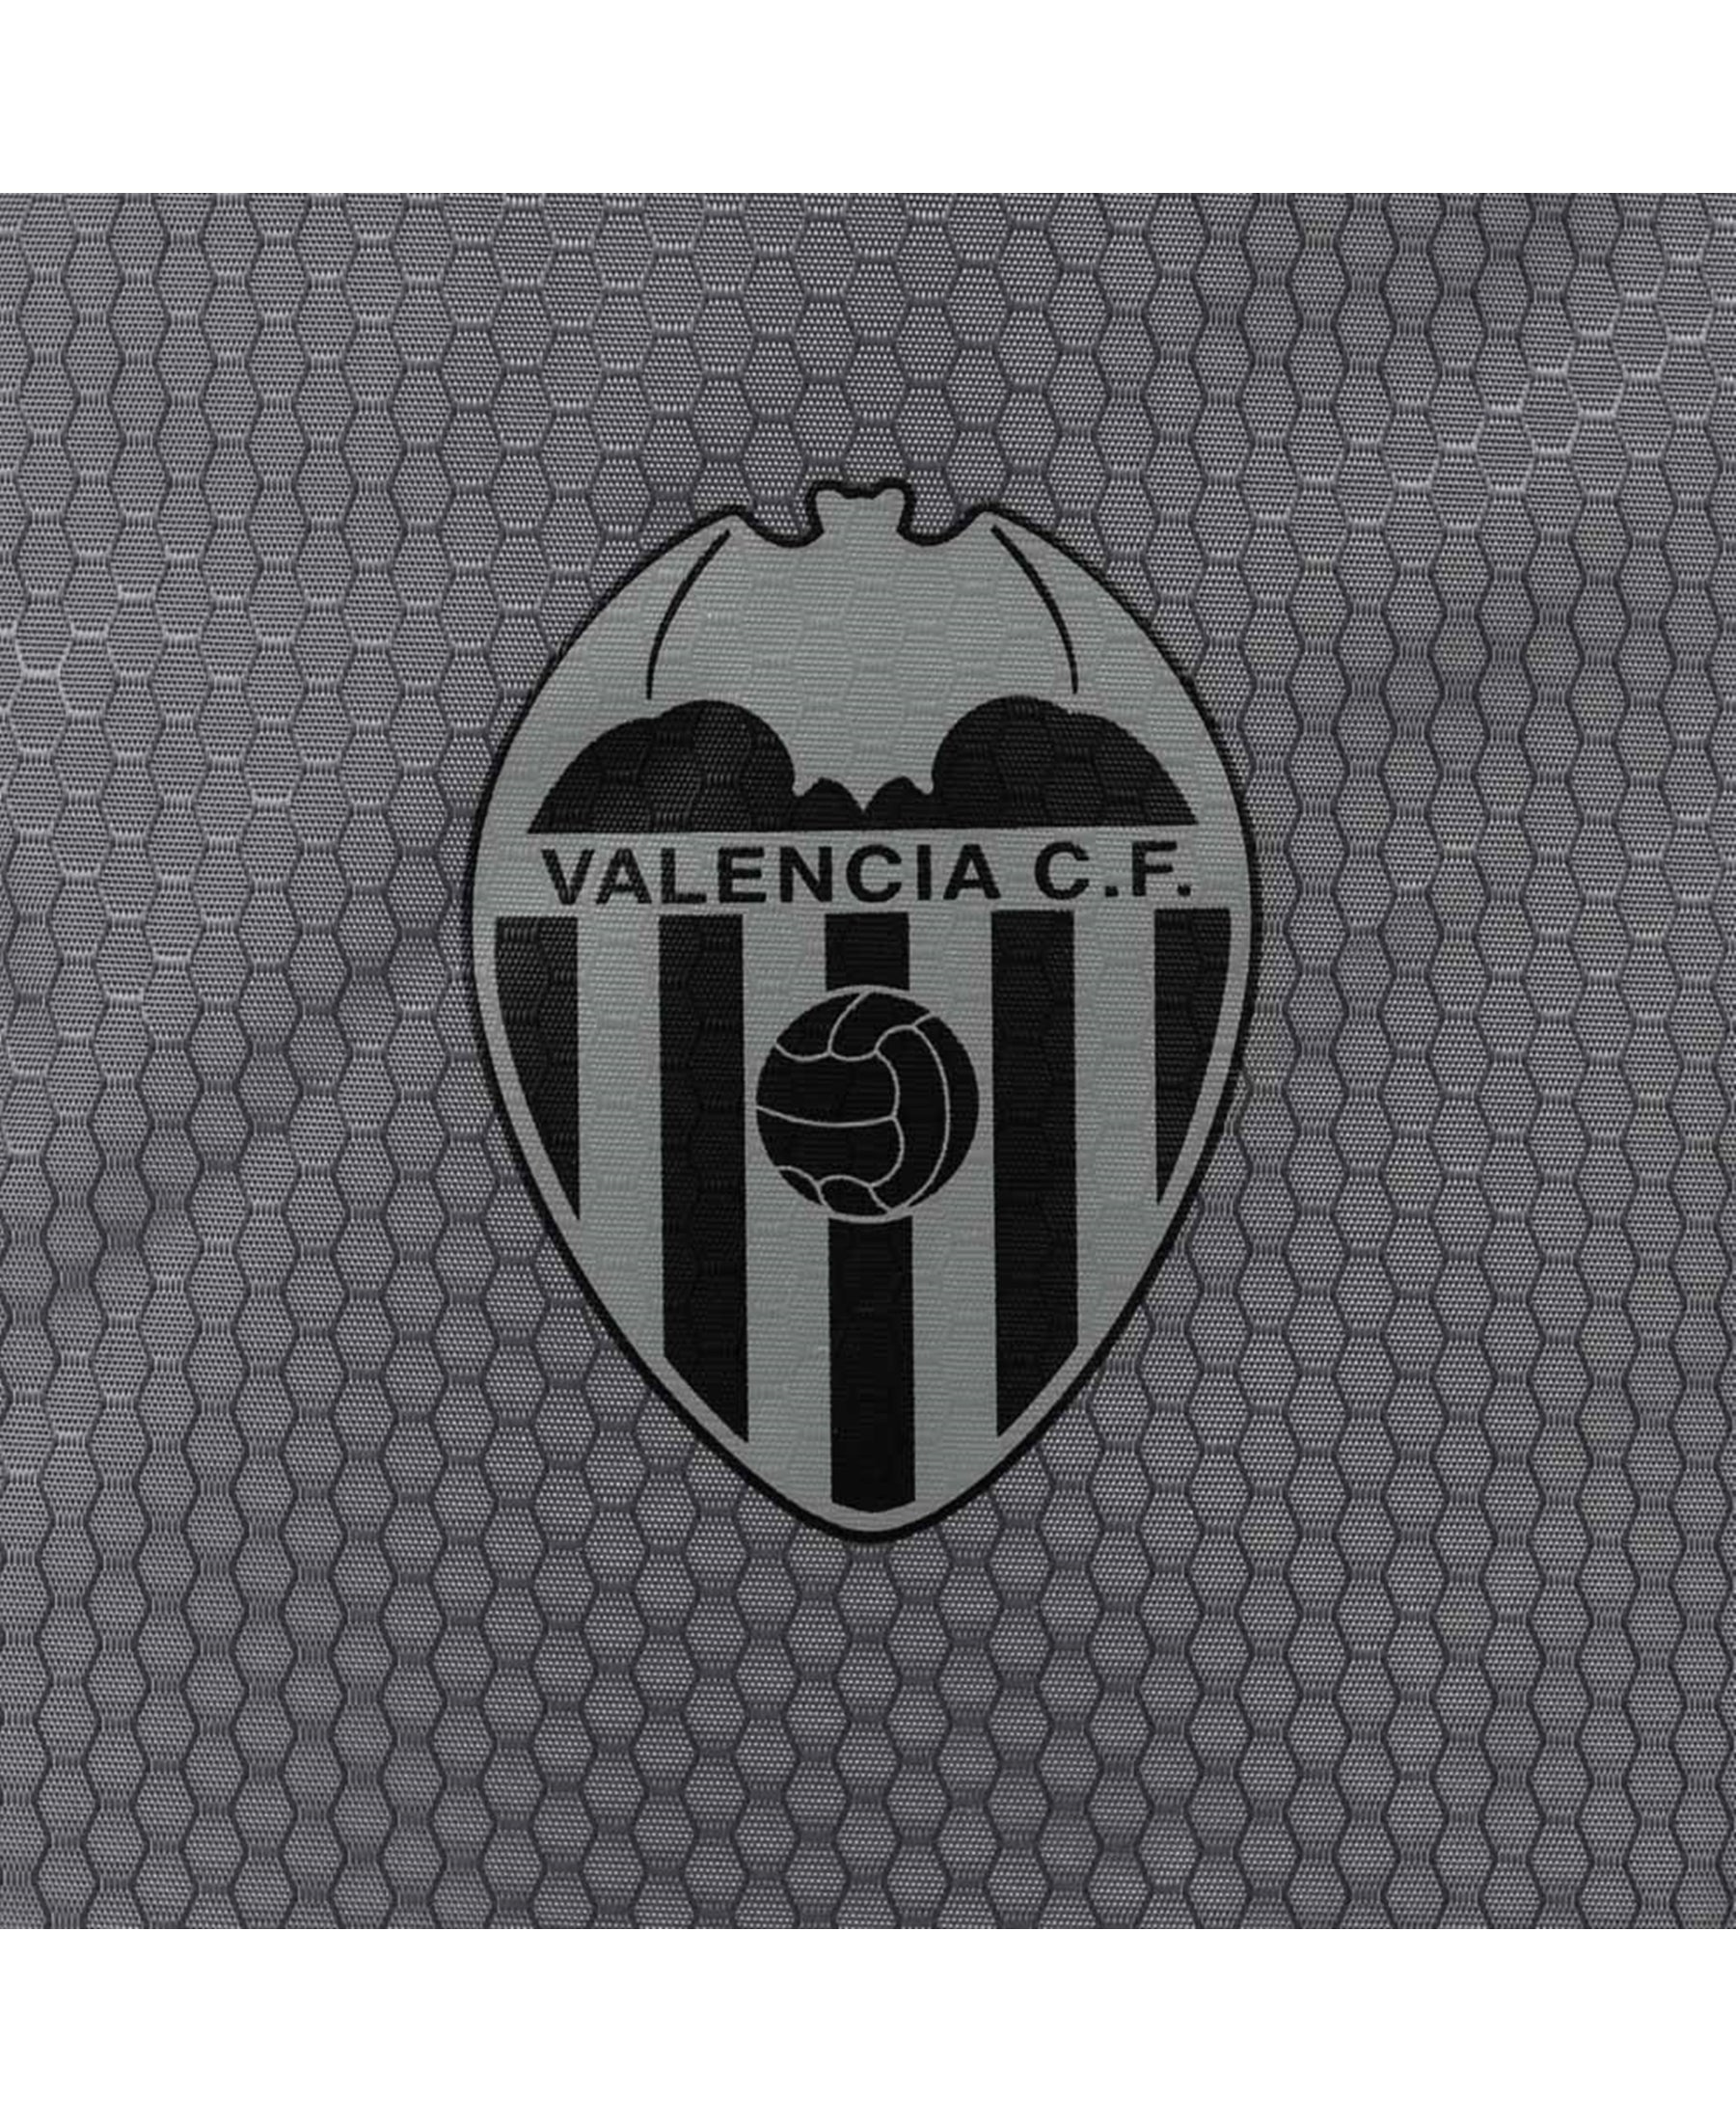 Der Puma FC Valencia VCF Final Turnbeutel (077734-02) ist ein praktischer Begleiter für alle Fans des Vereins. Dieser hochwertige Turnbeutel ist mit dem Vereinslogo verziert und eignet sich perfekt für den Sport, die Schule oder als stylisches Accessoire. Bestellen Sie jetzt bei SHOP4TEAMSPORT und zeigen Sie Ihre Unterstützung für FC Valencia auf stilvolle Weise. Der Puma FC Valencia VCF Final Turnbeutel ist nicht nur funktional, sondern auch ein modisches Statement.